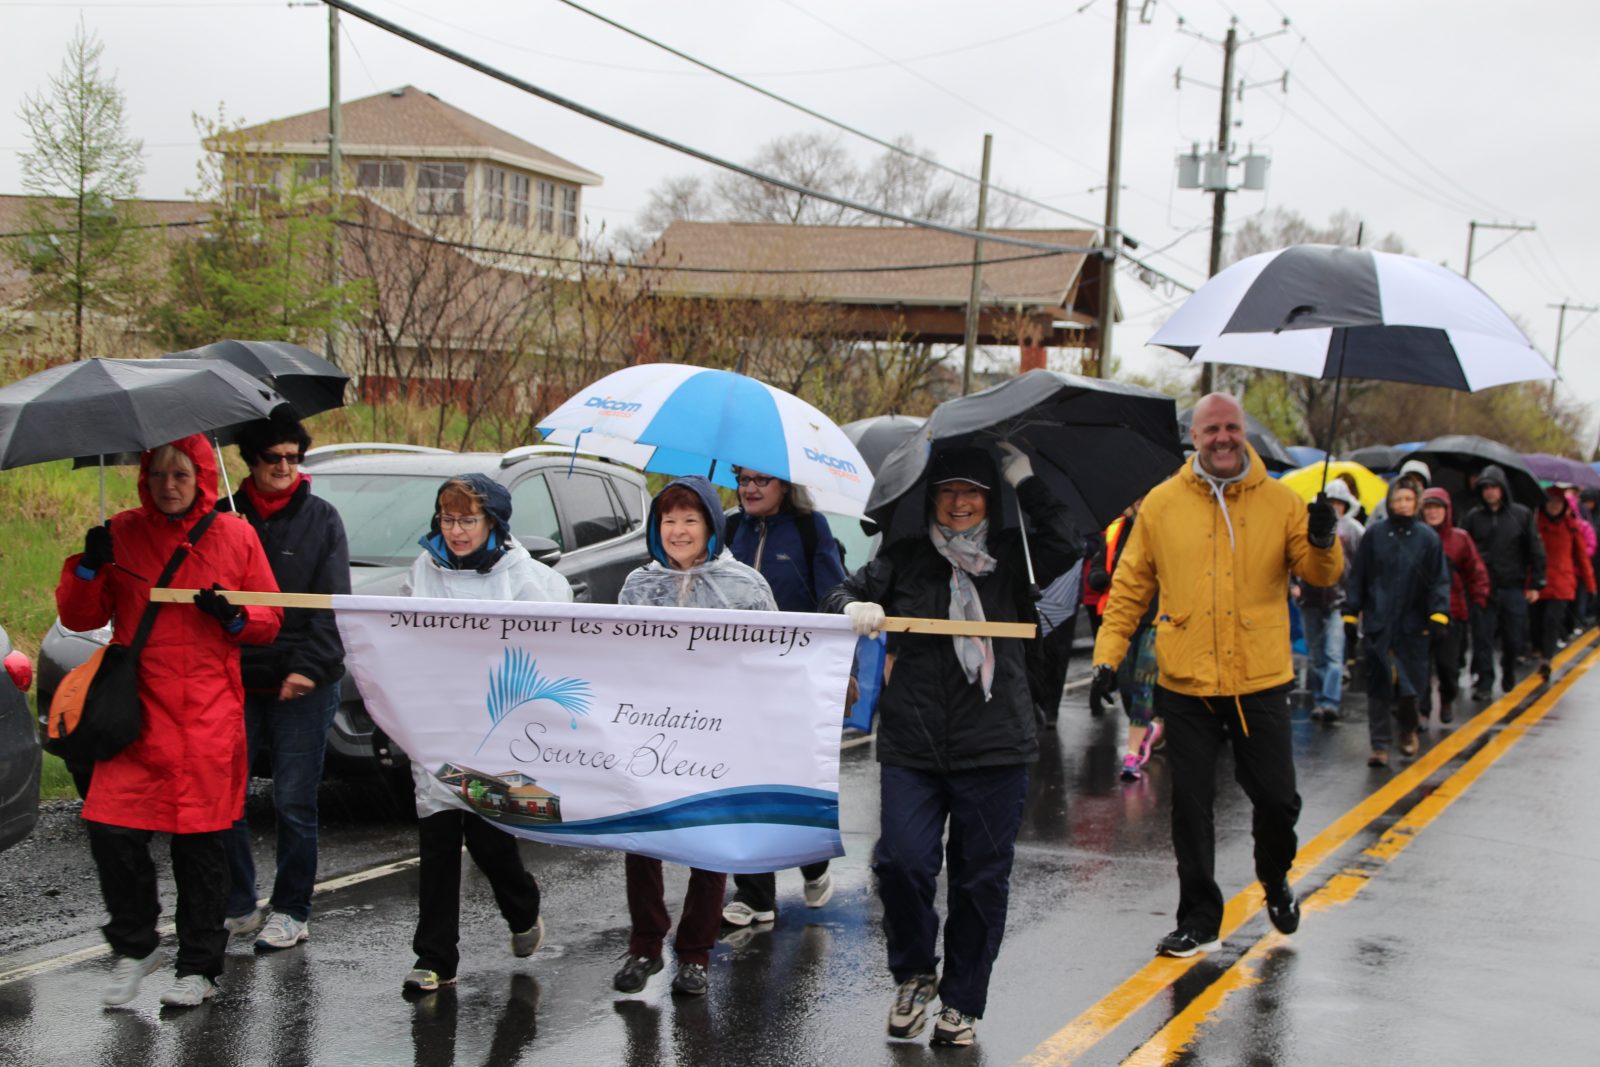 Plus de 168 000 $ amassés à la 8e Marche pour la Maison de soins palliatifs Source Bleue